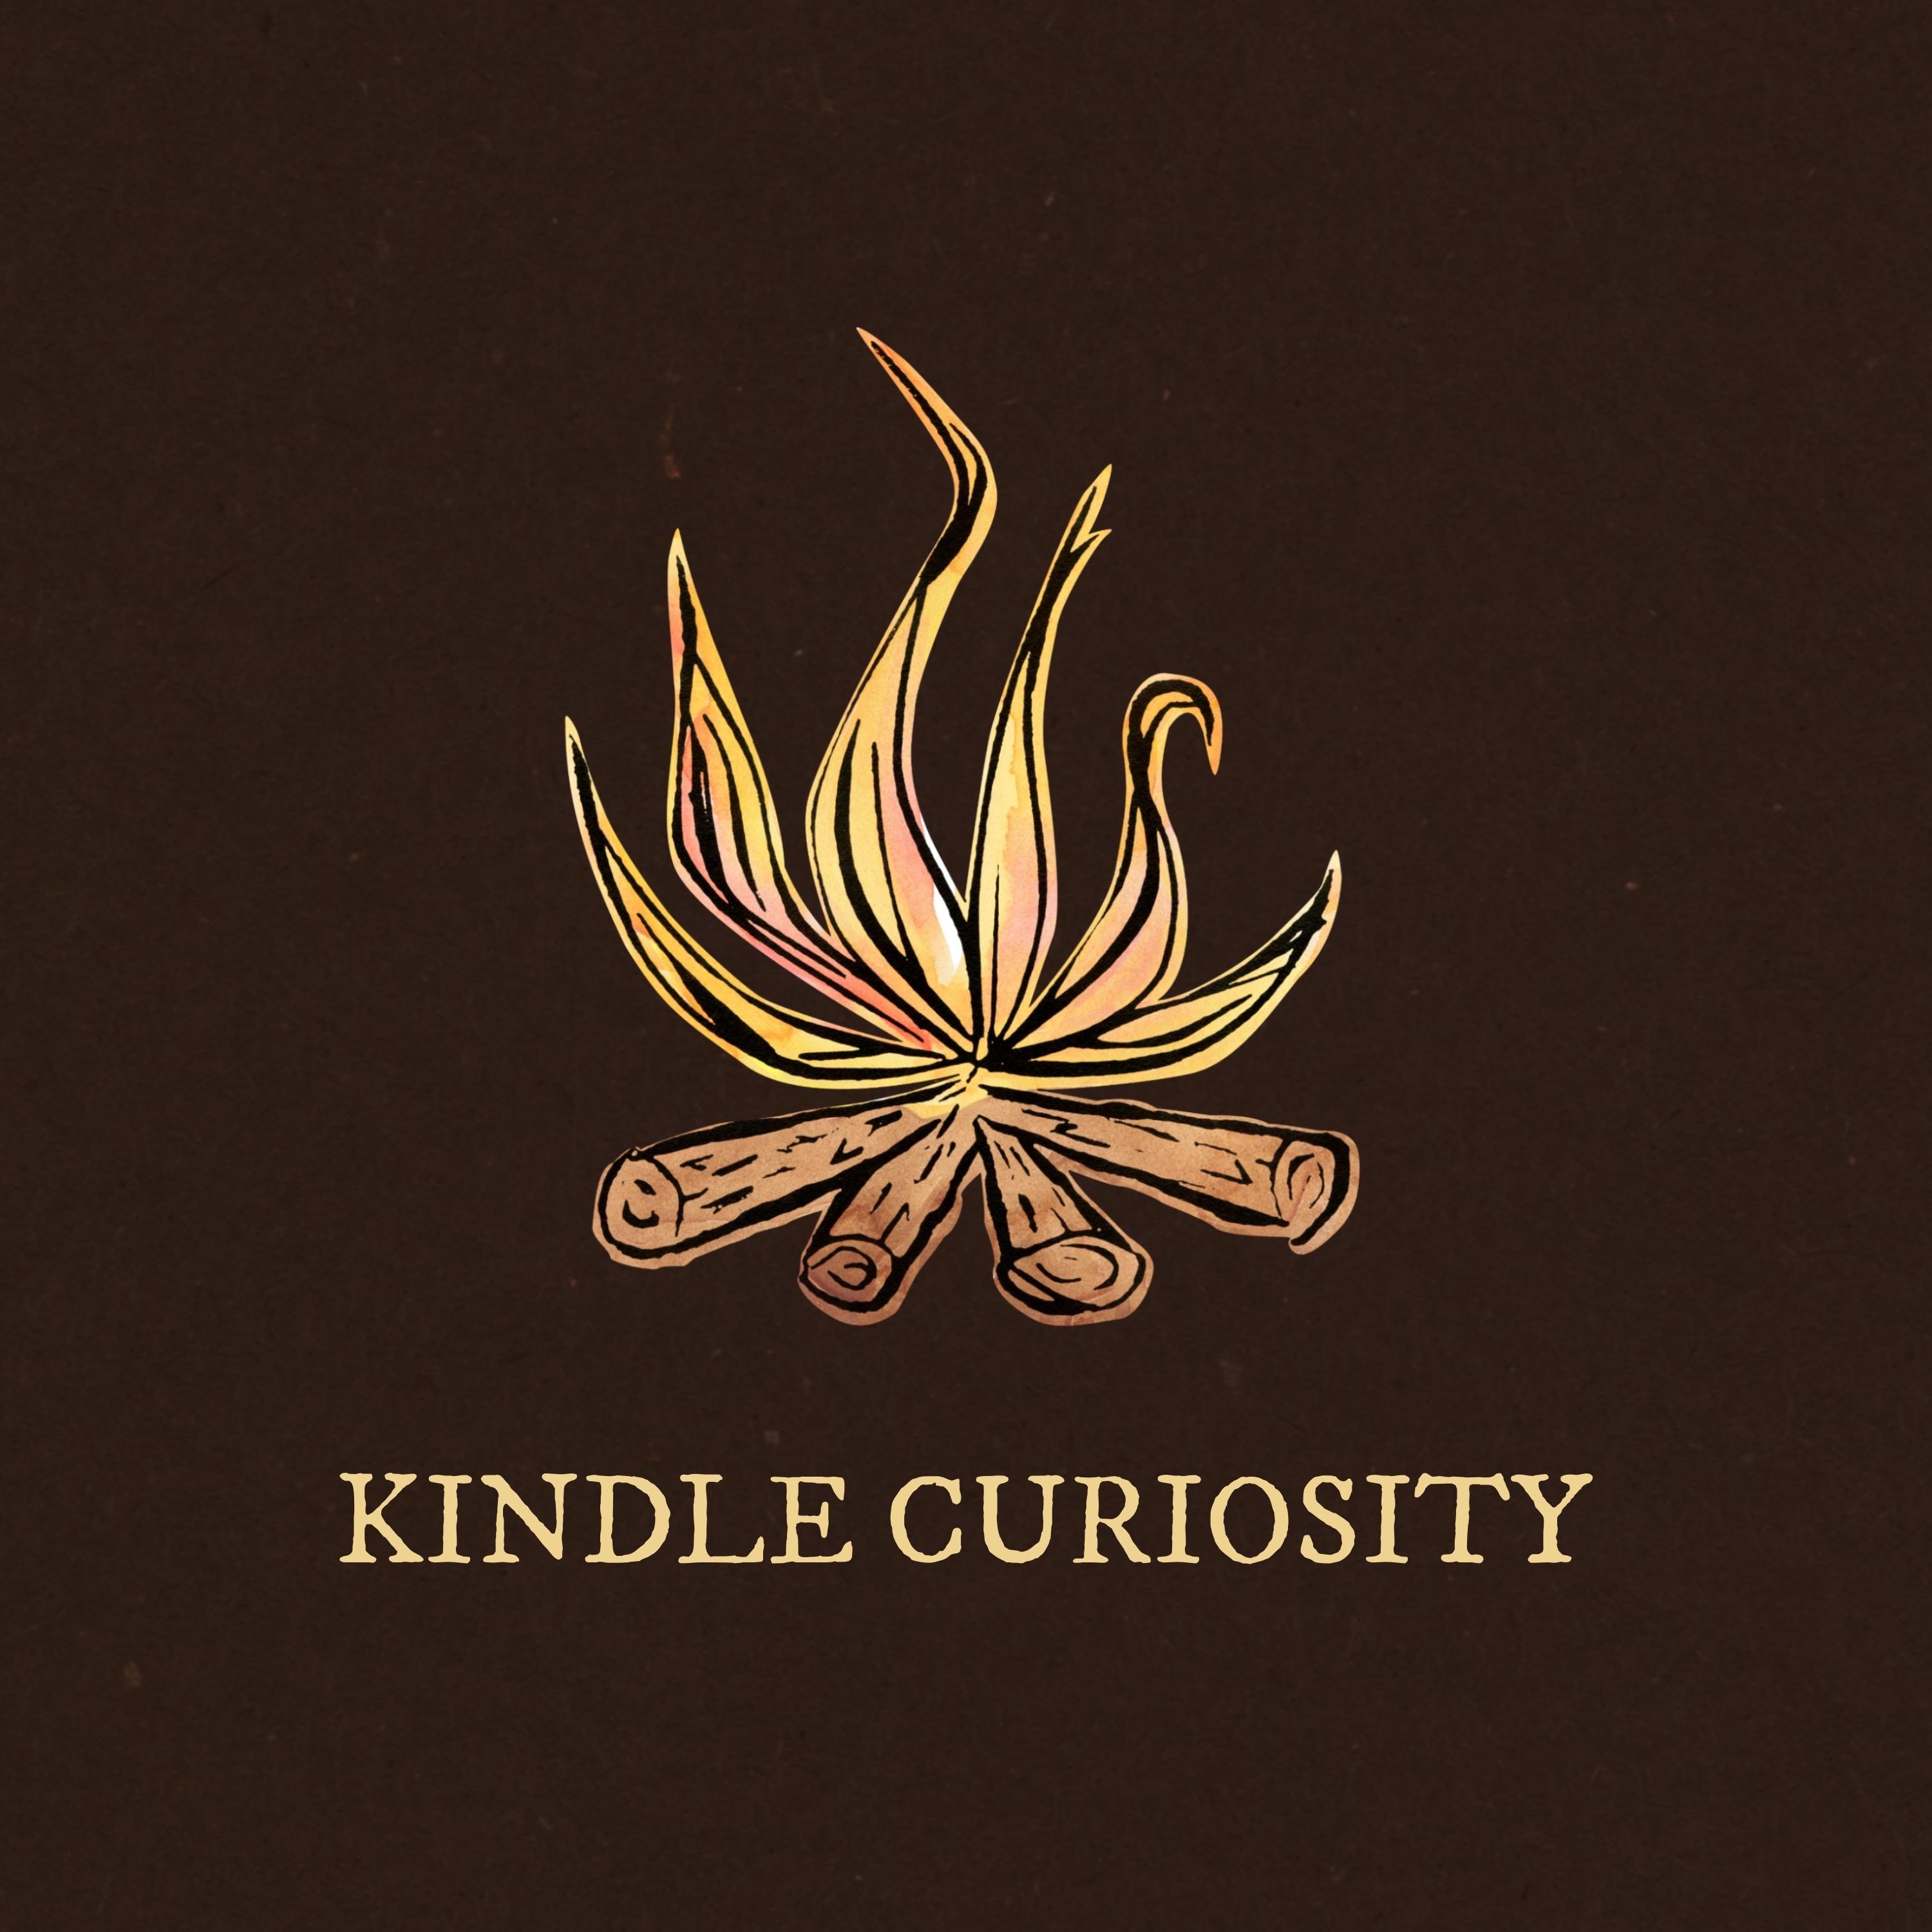 Kindle Curiosity